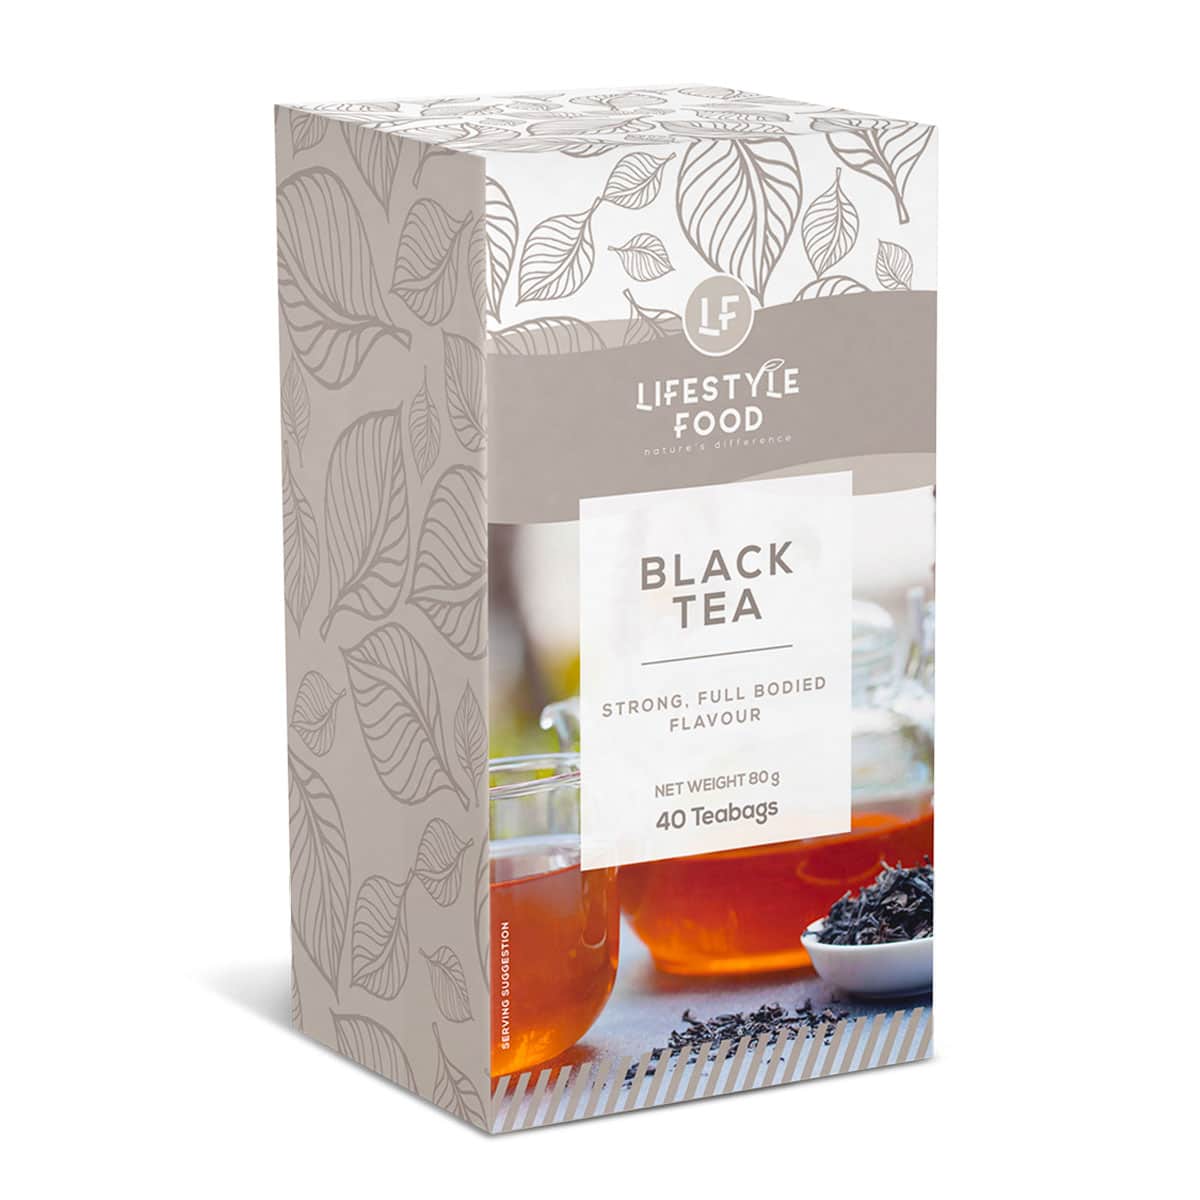 Lifestyle Food Black Tea Value Pack - 40 Teabags